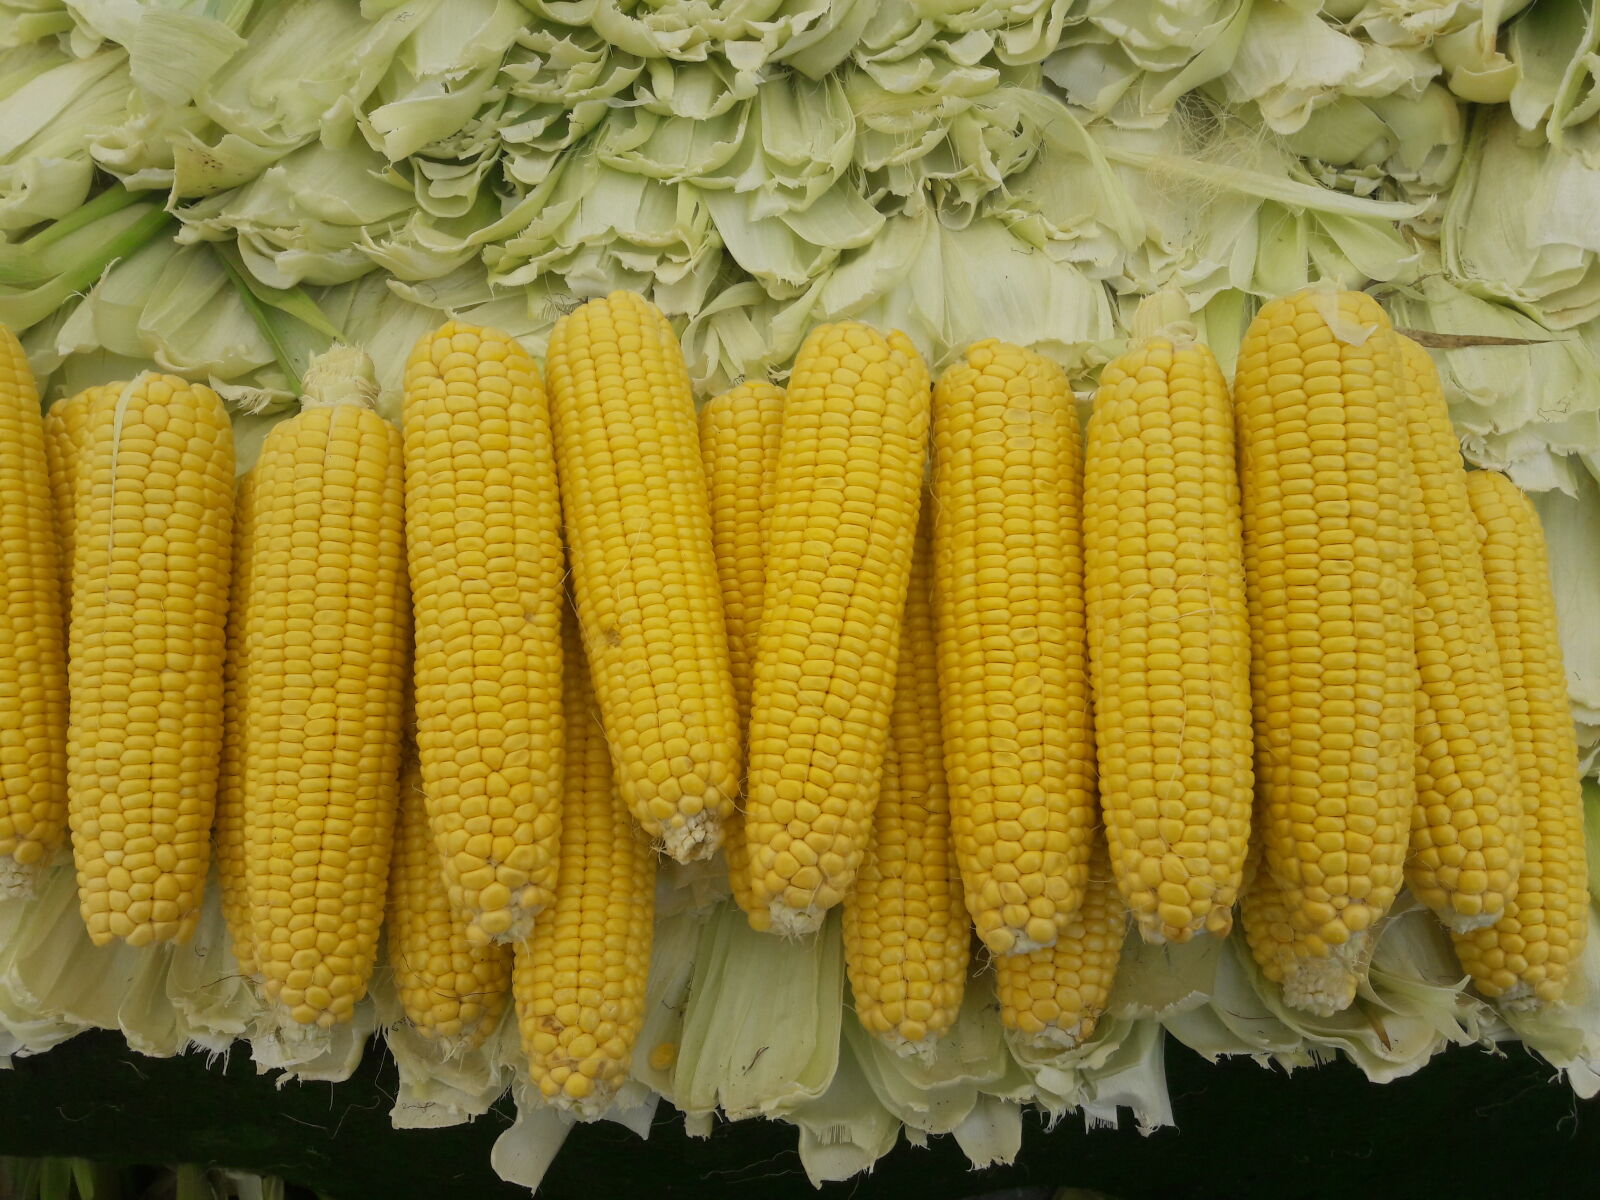 Samsung Galaxy J7 sample photo. Corn photography